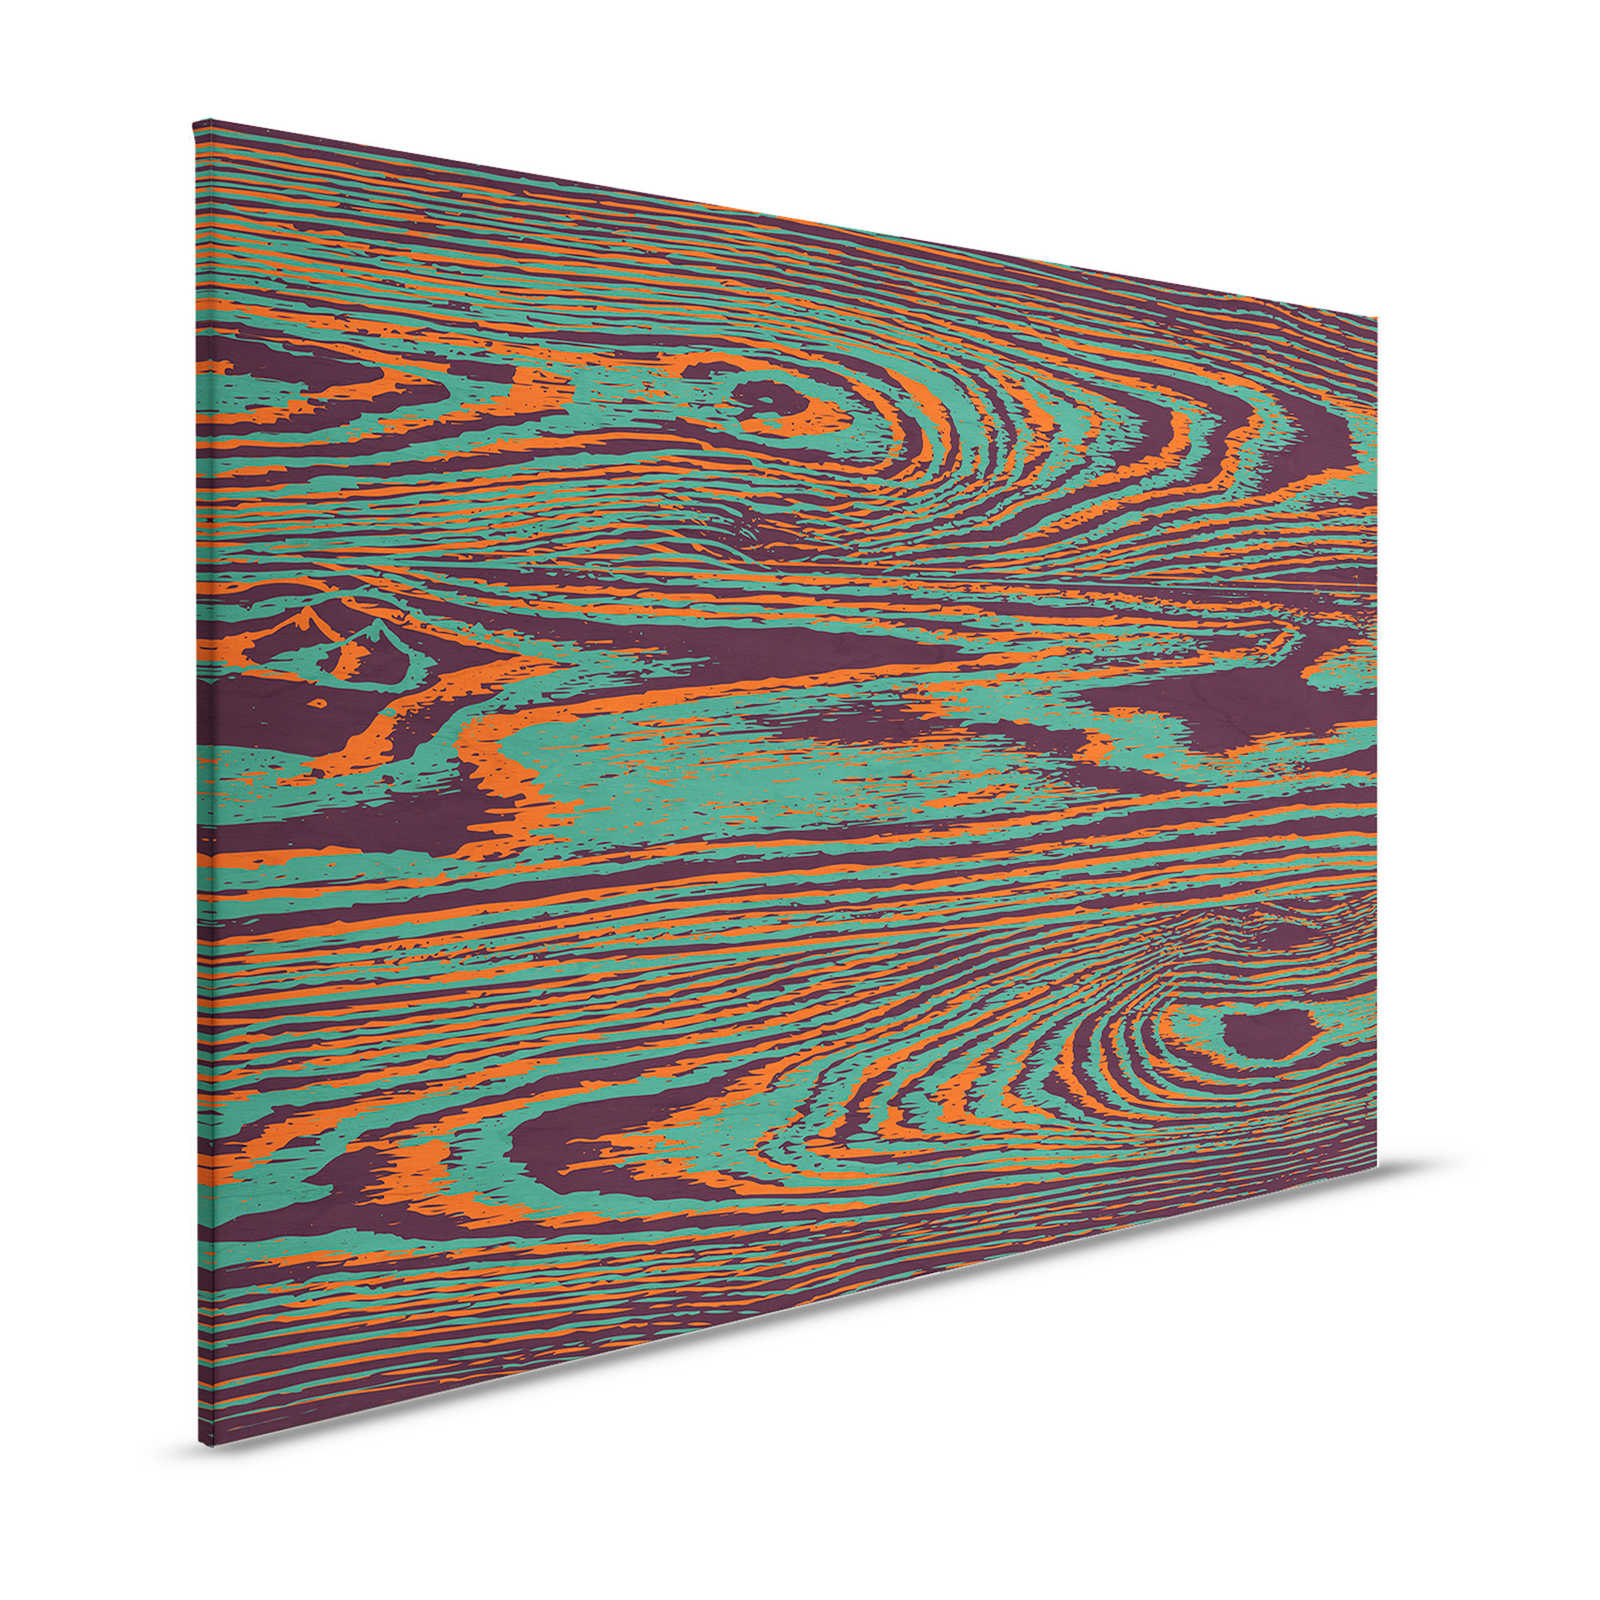 Kontiki 1 - Lienzo Grano de madera Colores neón, verde y negro - 1,20 m x 0,80 m
